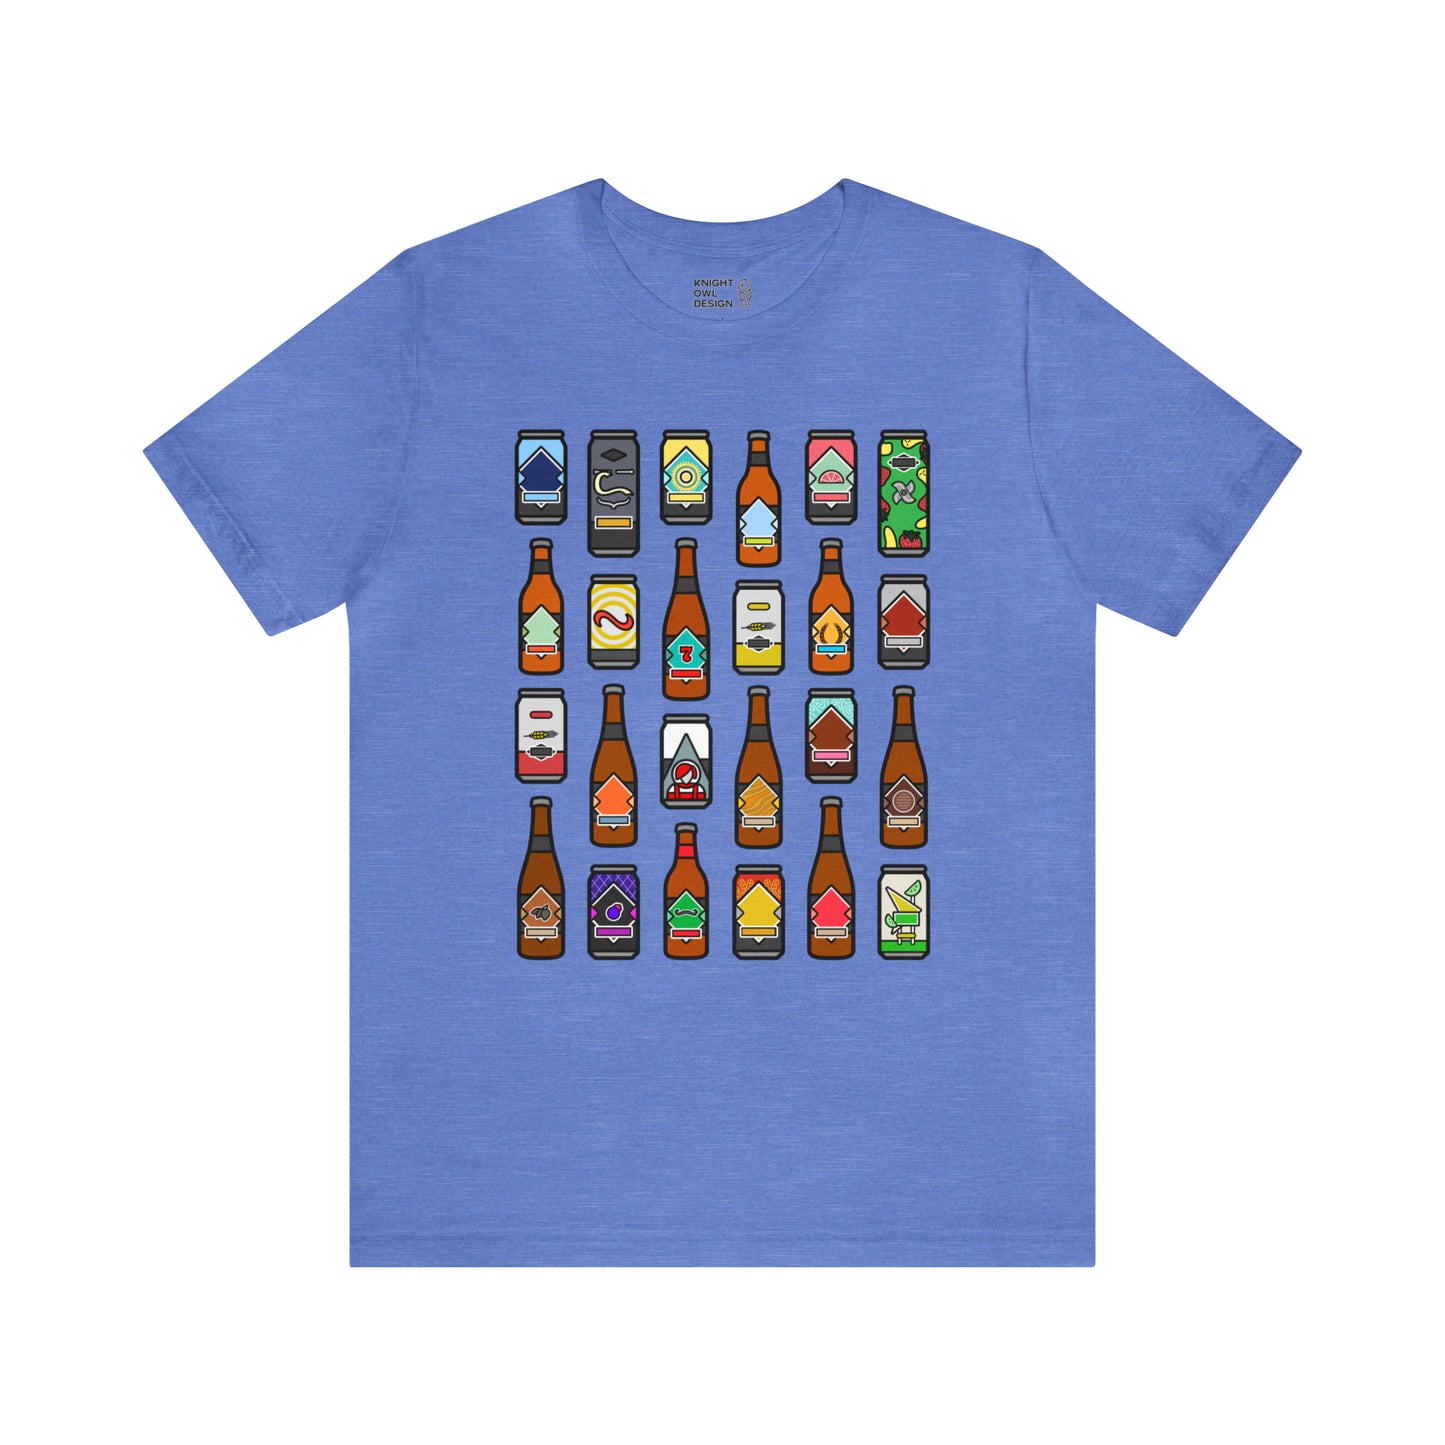 Beers of Boulevard – Unisex Tee Shirt